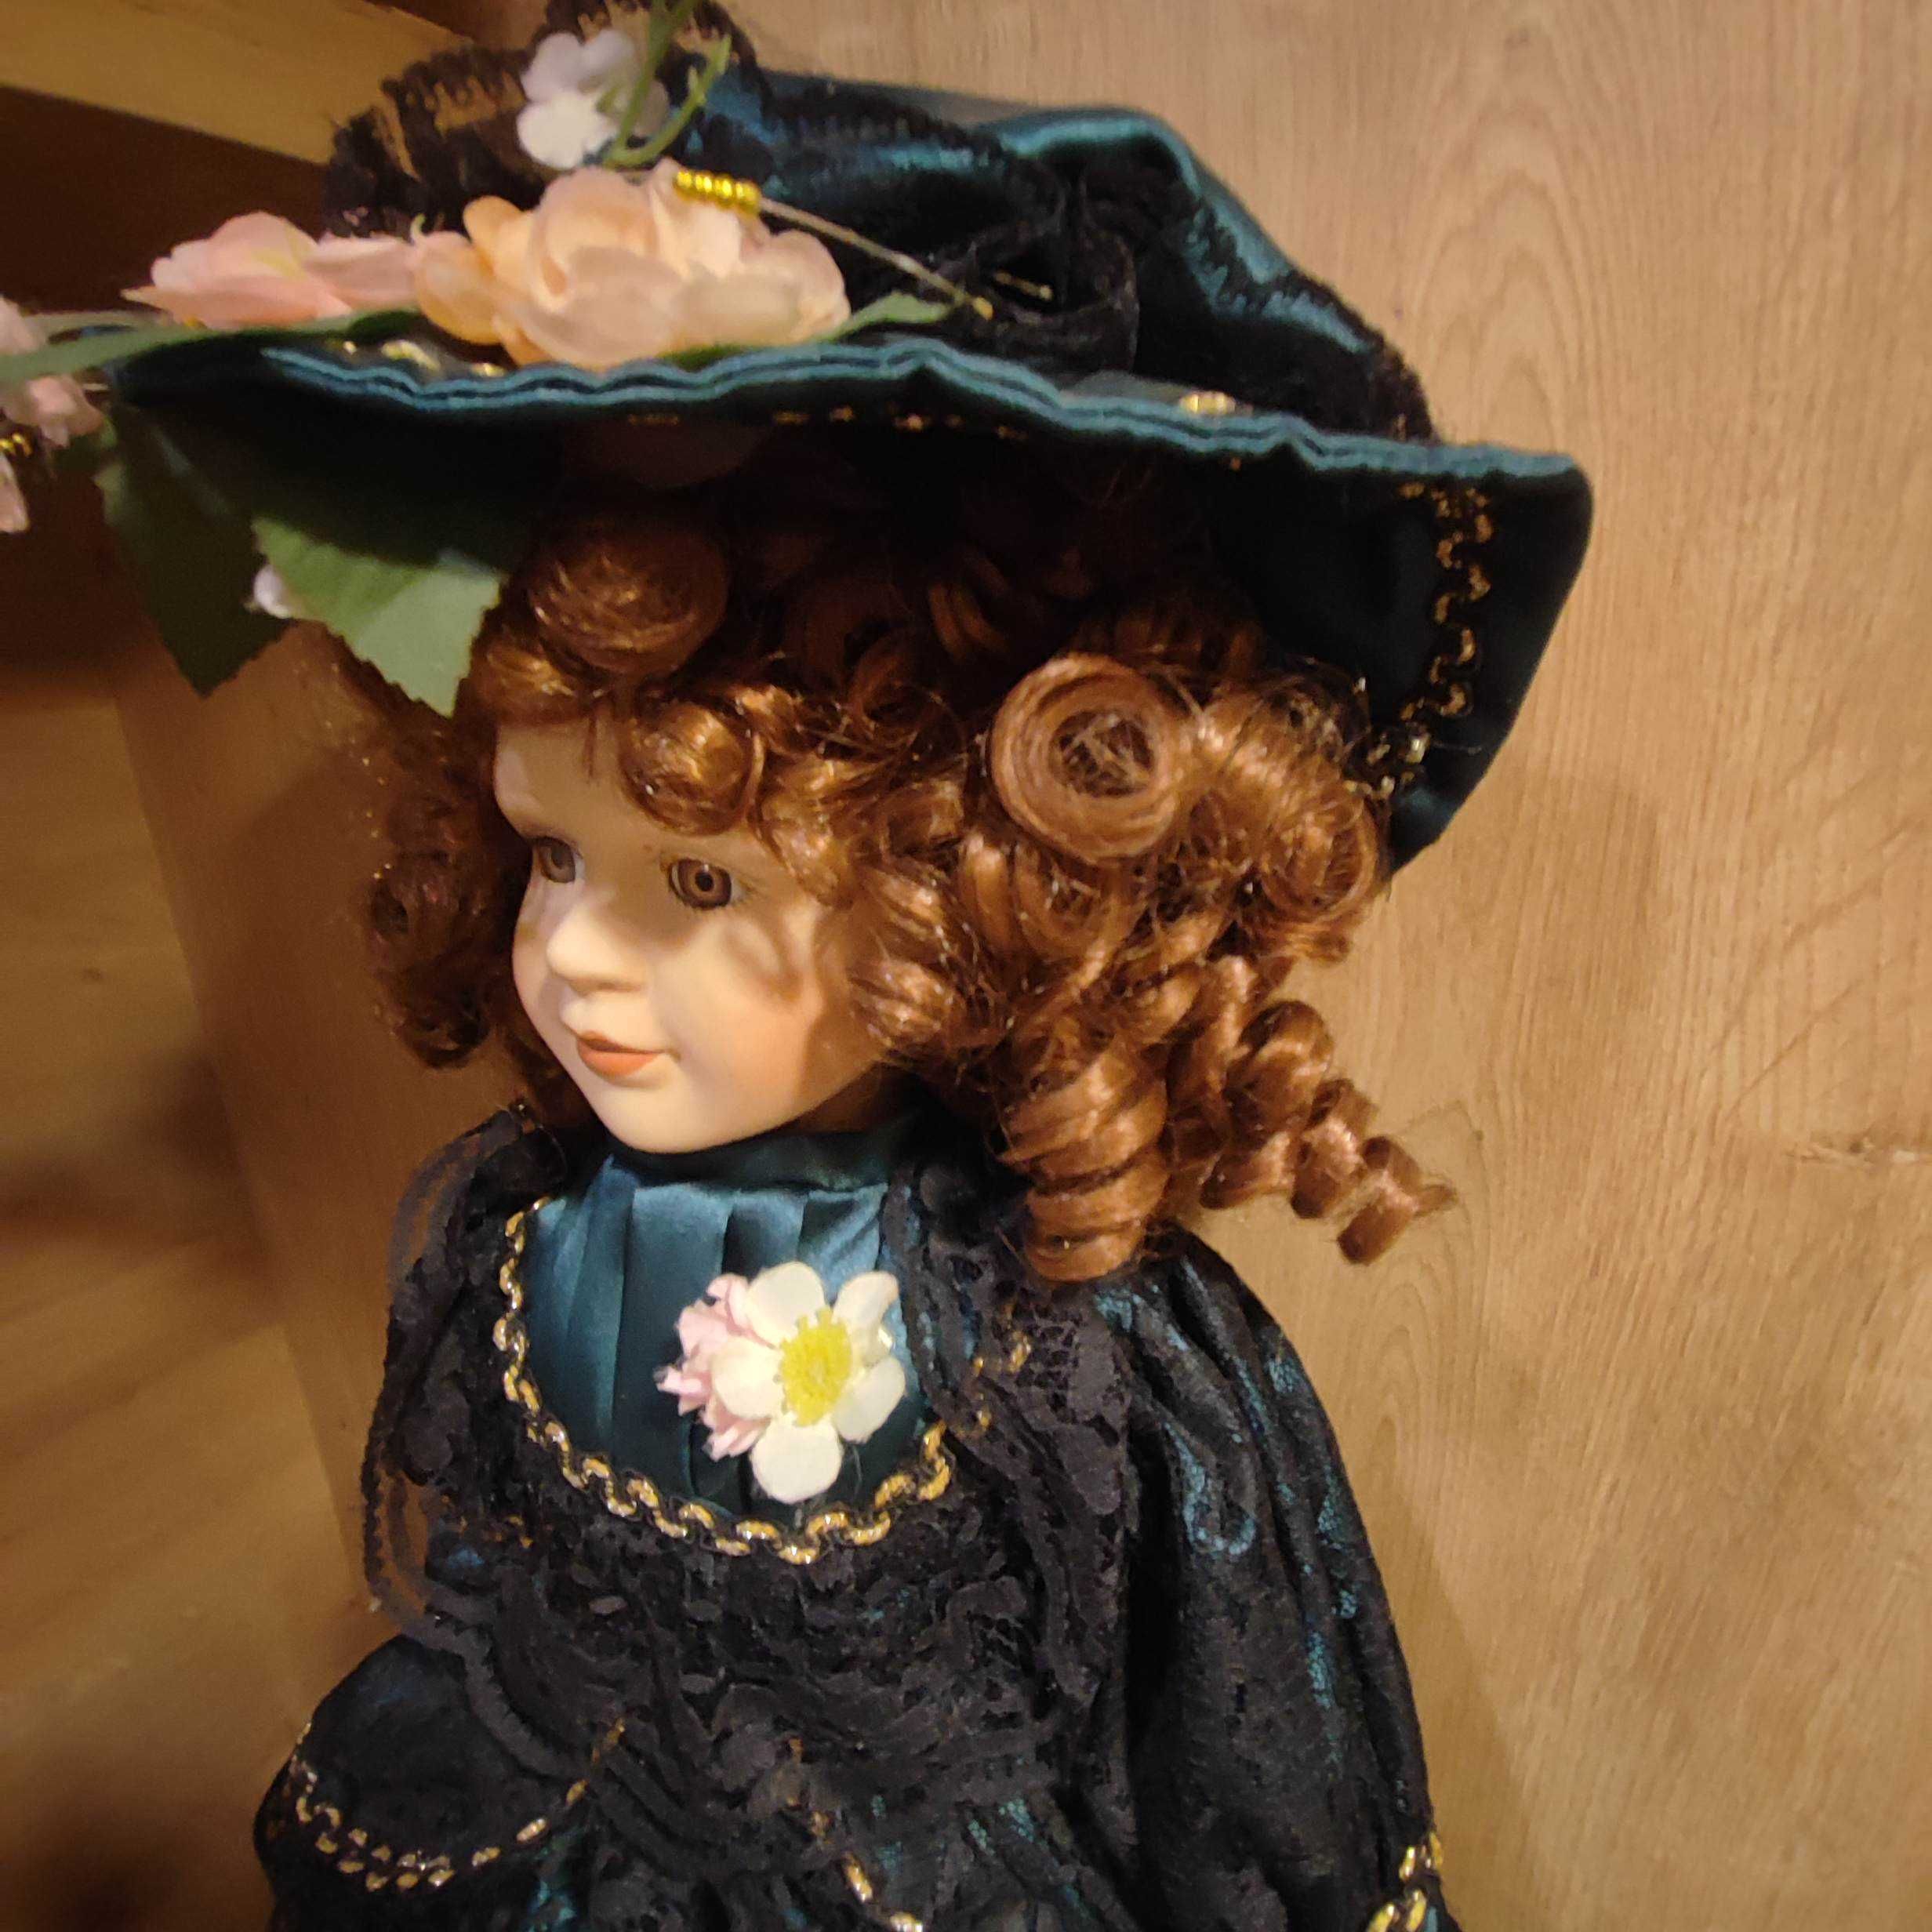 DUŻA RZADKA  Lalka kolekcjonerska  (collectible porcelain doll)